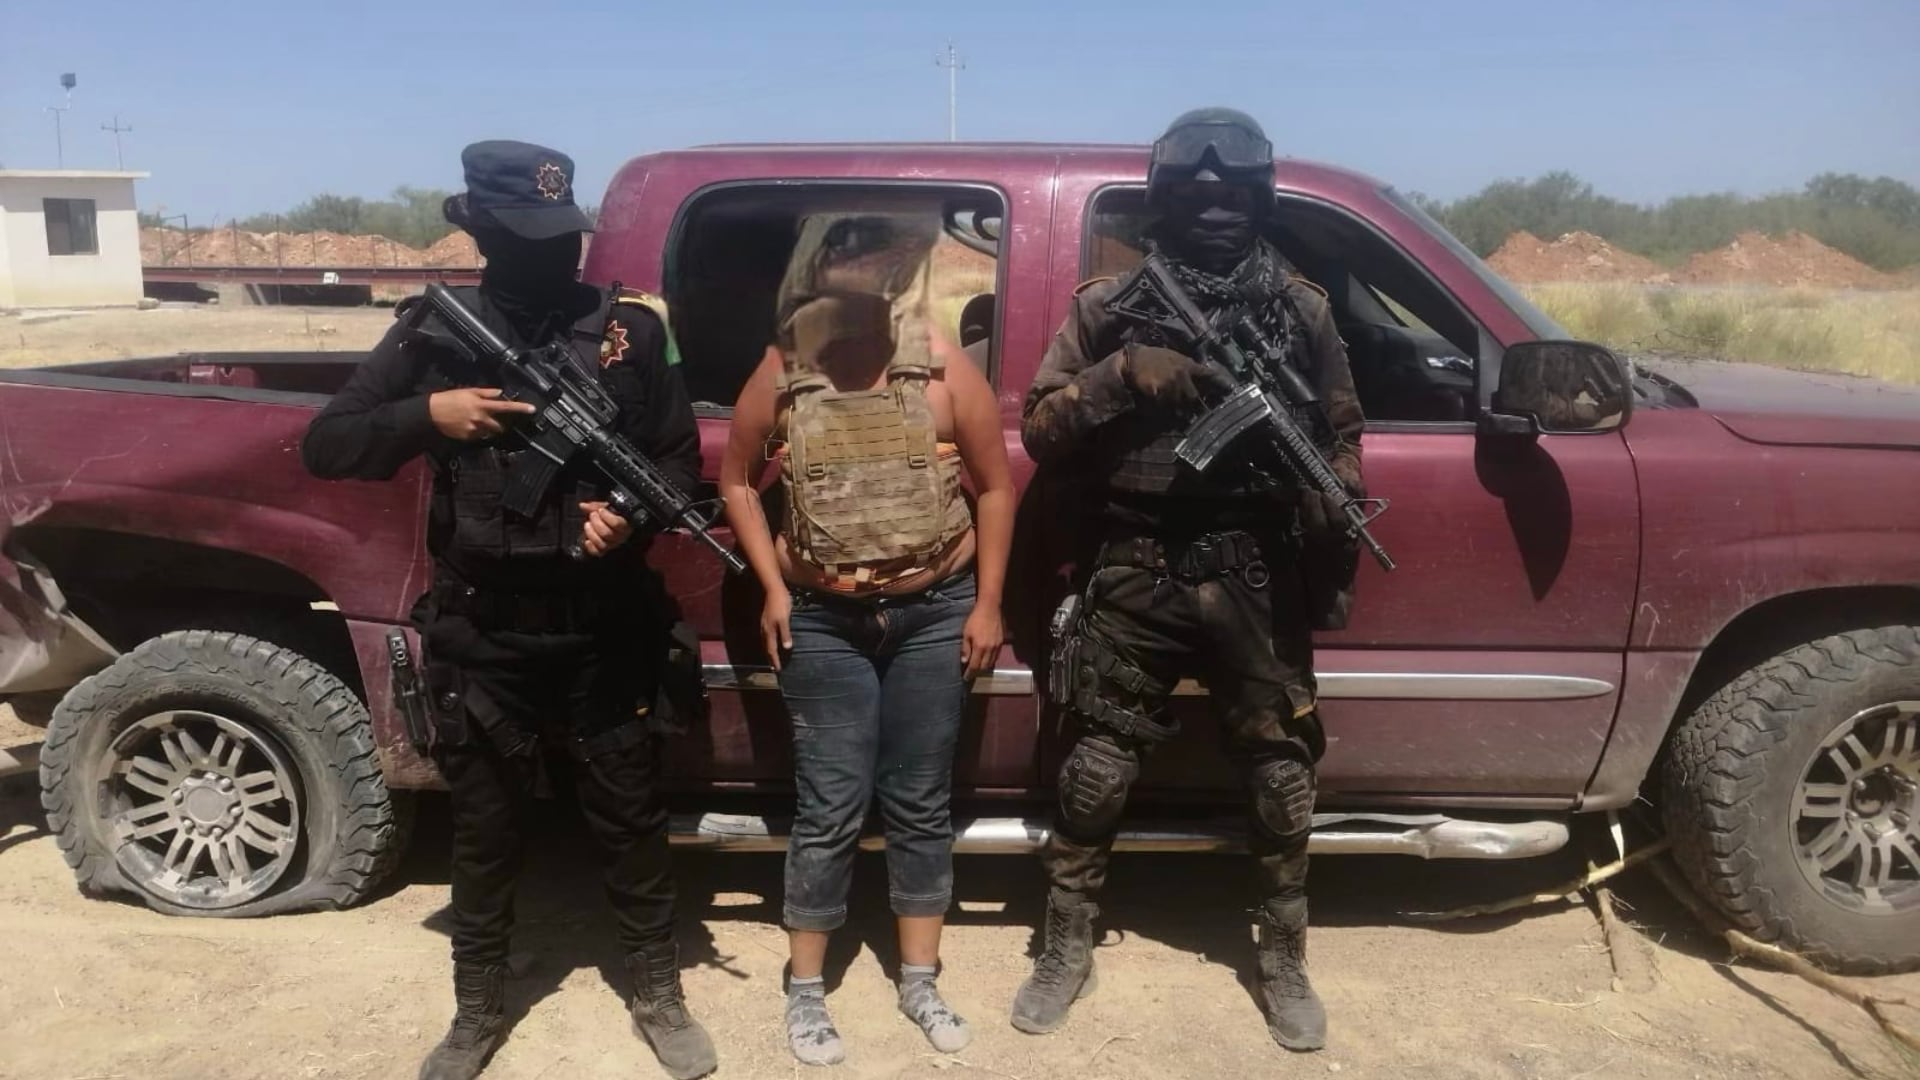 Tras la detención, las autoridades aseguraron una camioneta, armas y chalecos tácticos (Foto: Twitter@GerardoPPmanes)